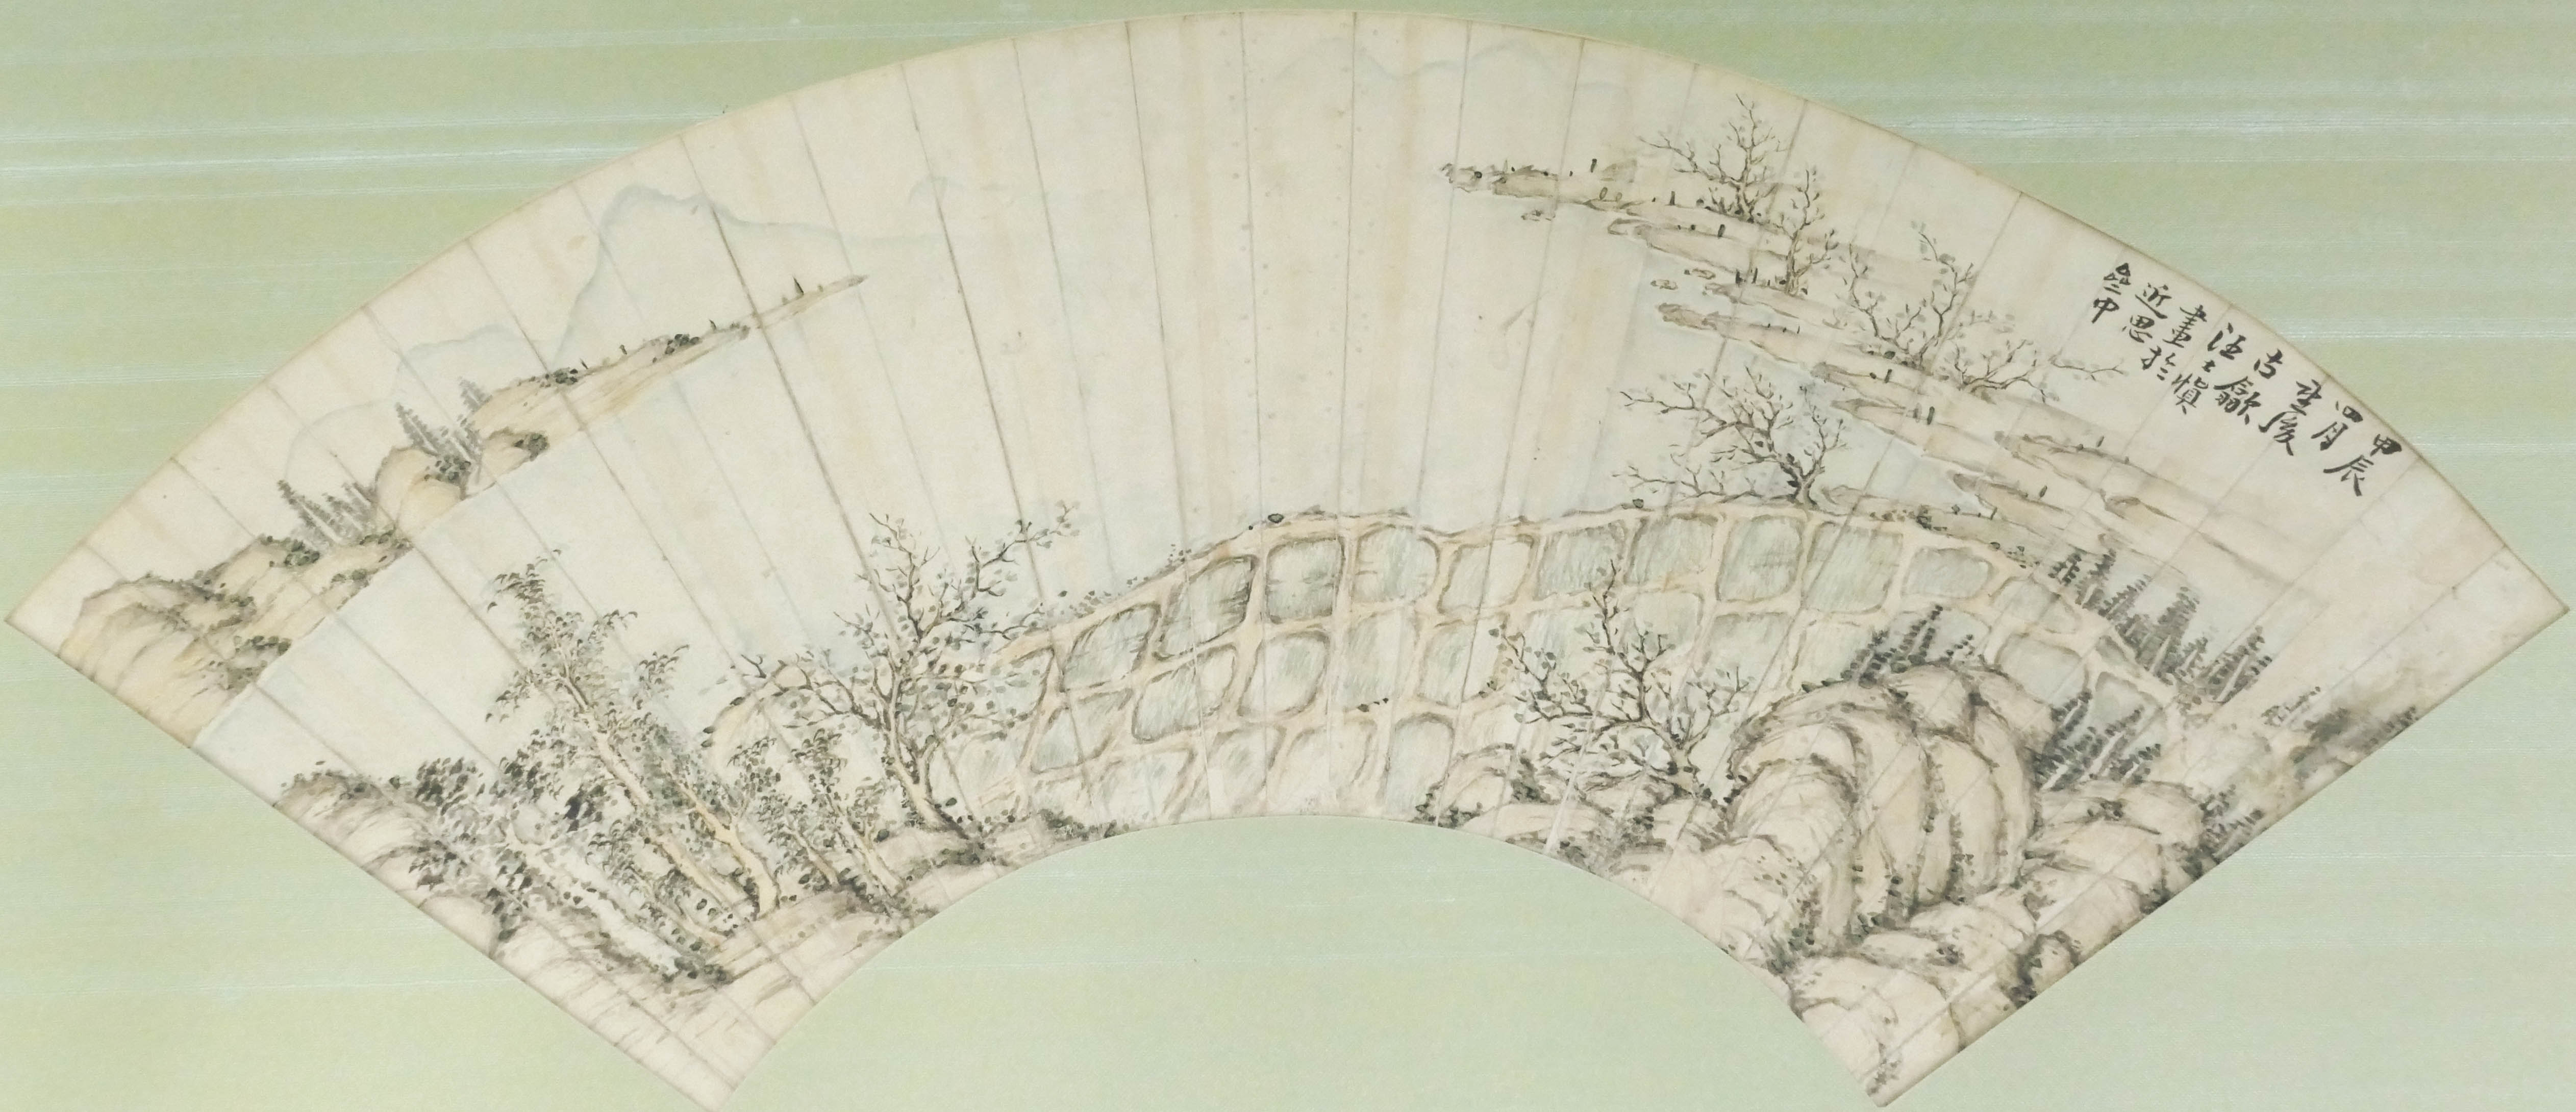 Attributed to Shishen Wang (1686-1759